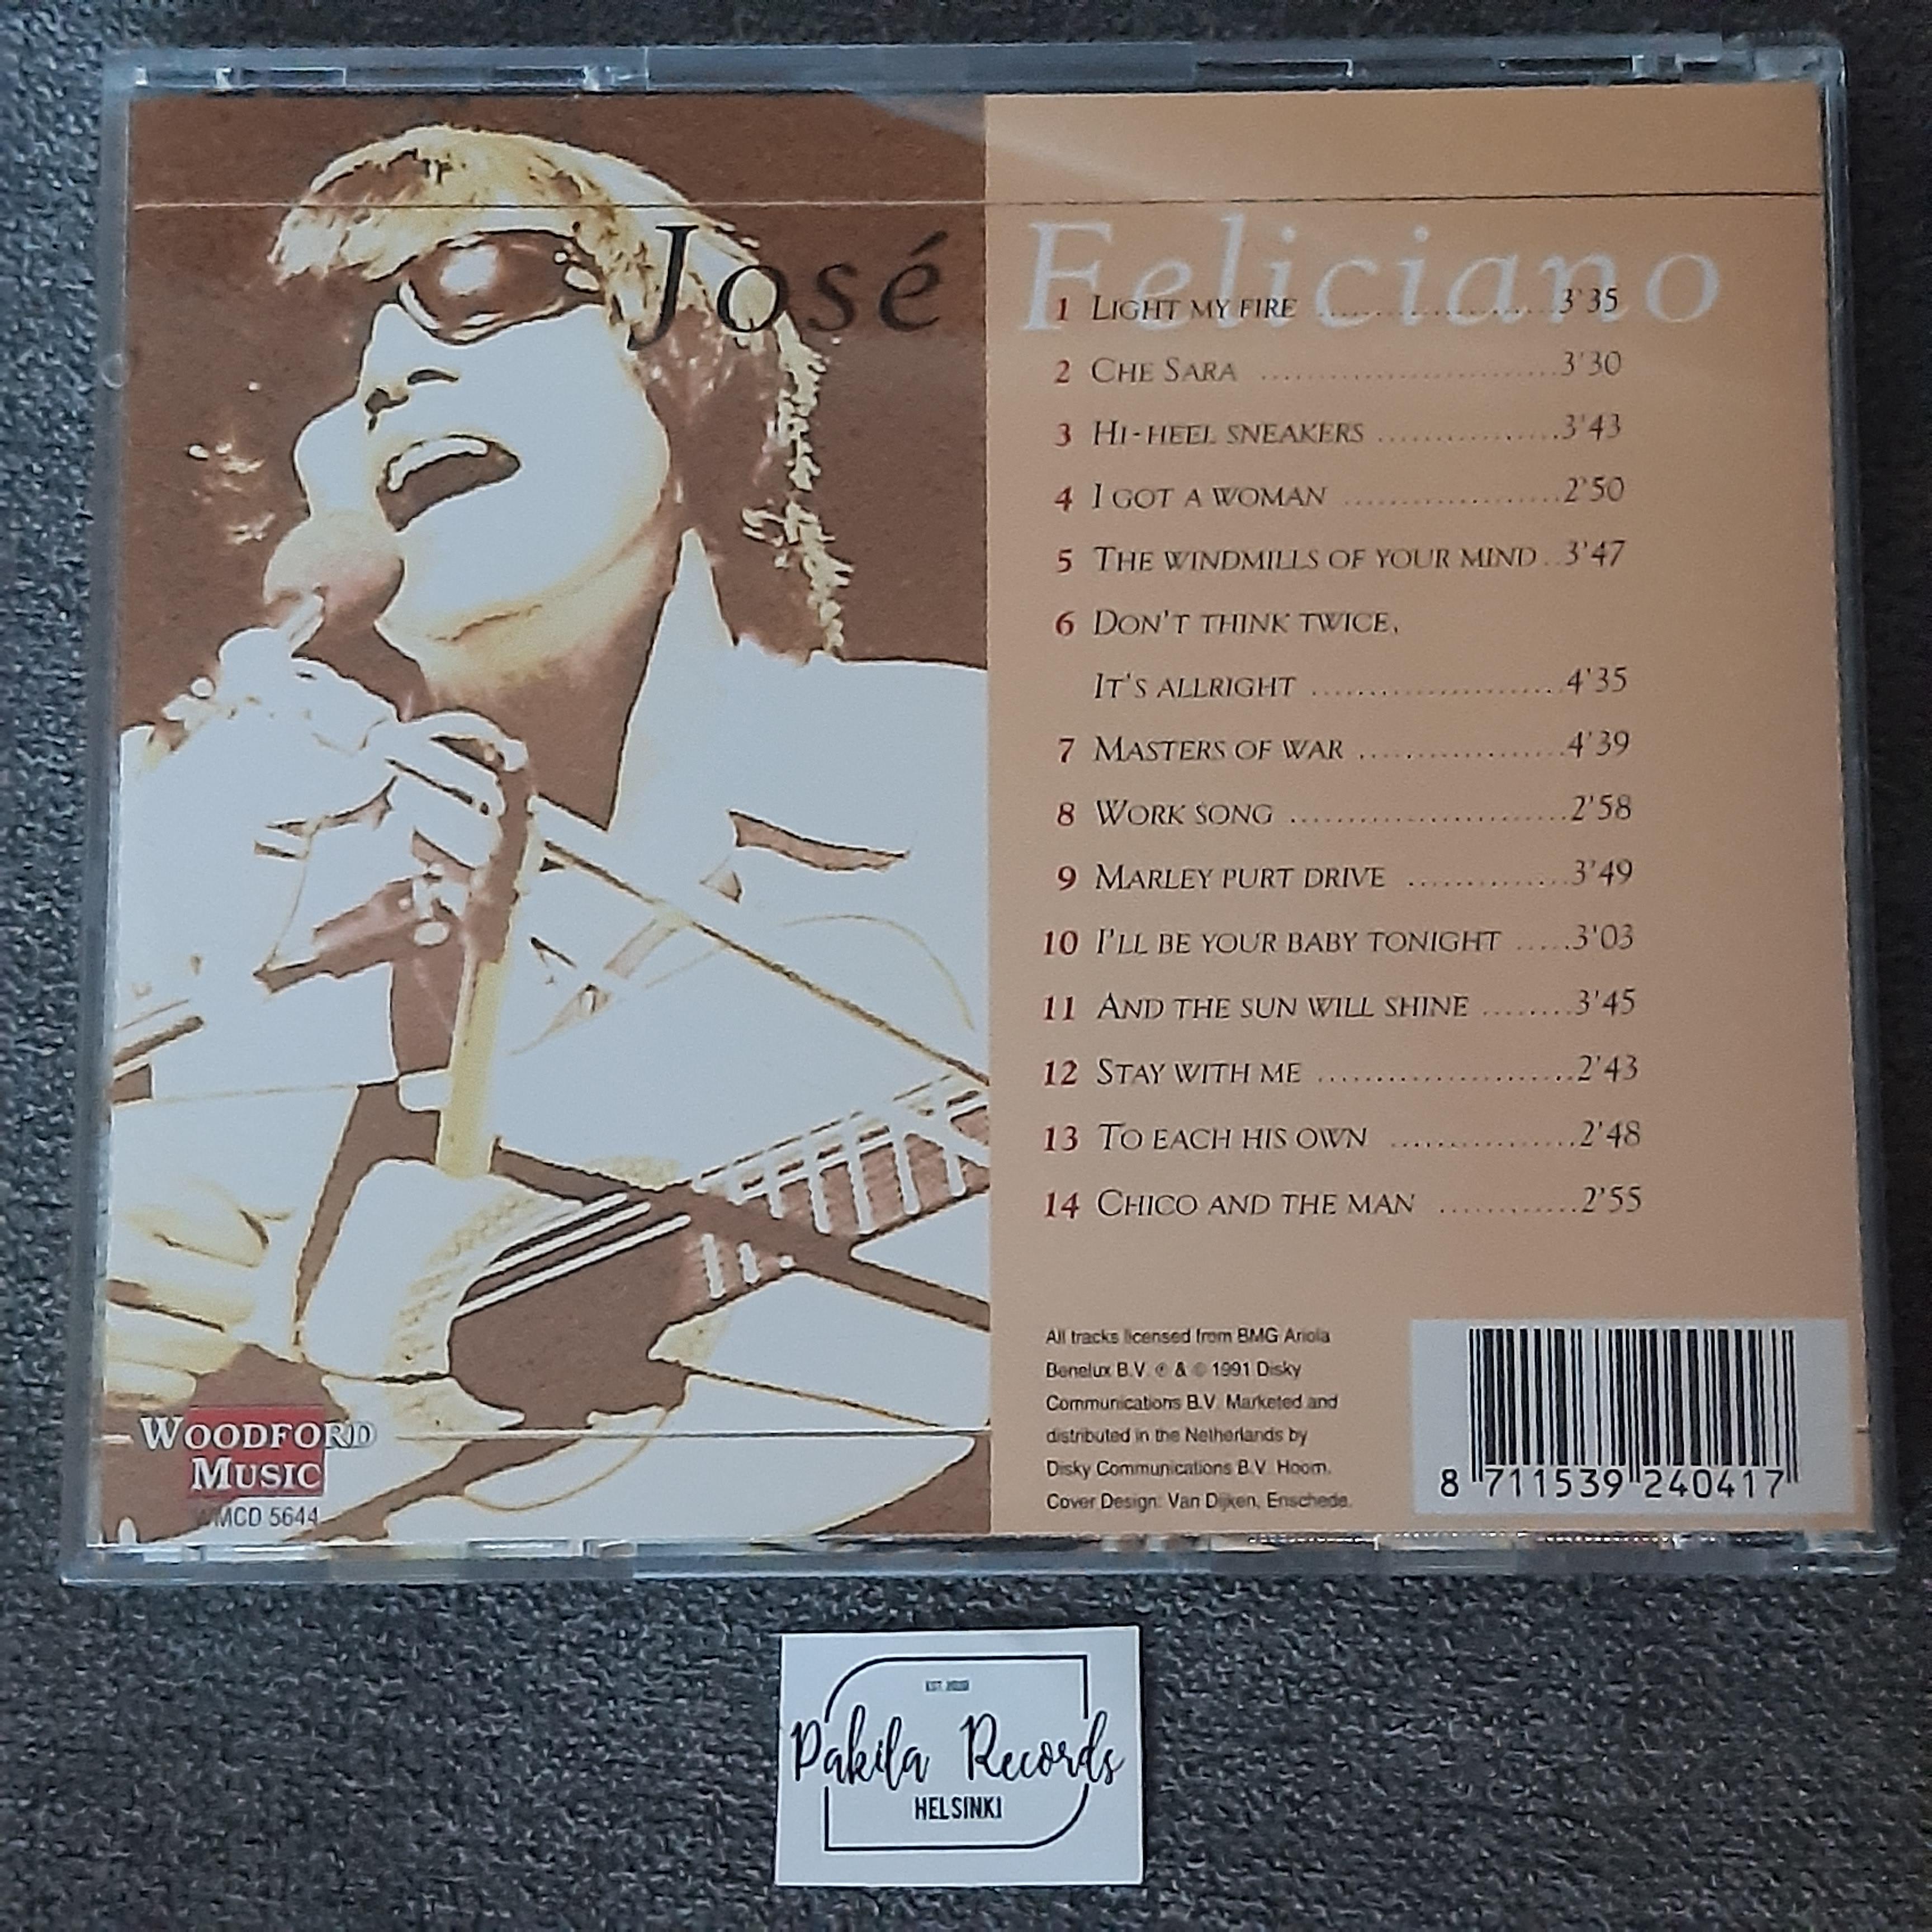 José Feliciano - His Greatest Hits - CD (käytetty)